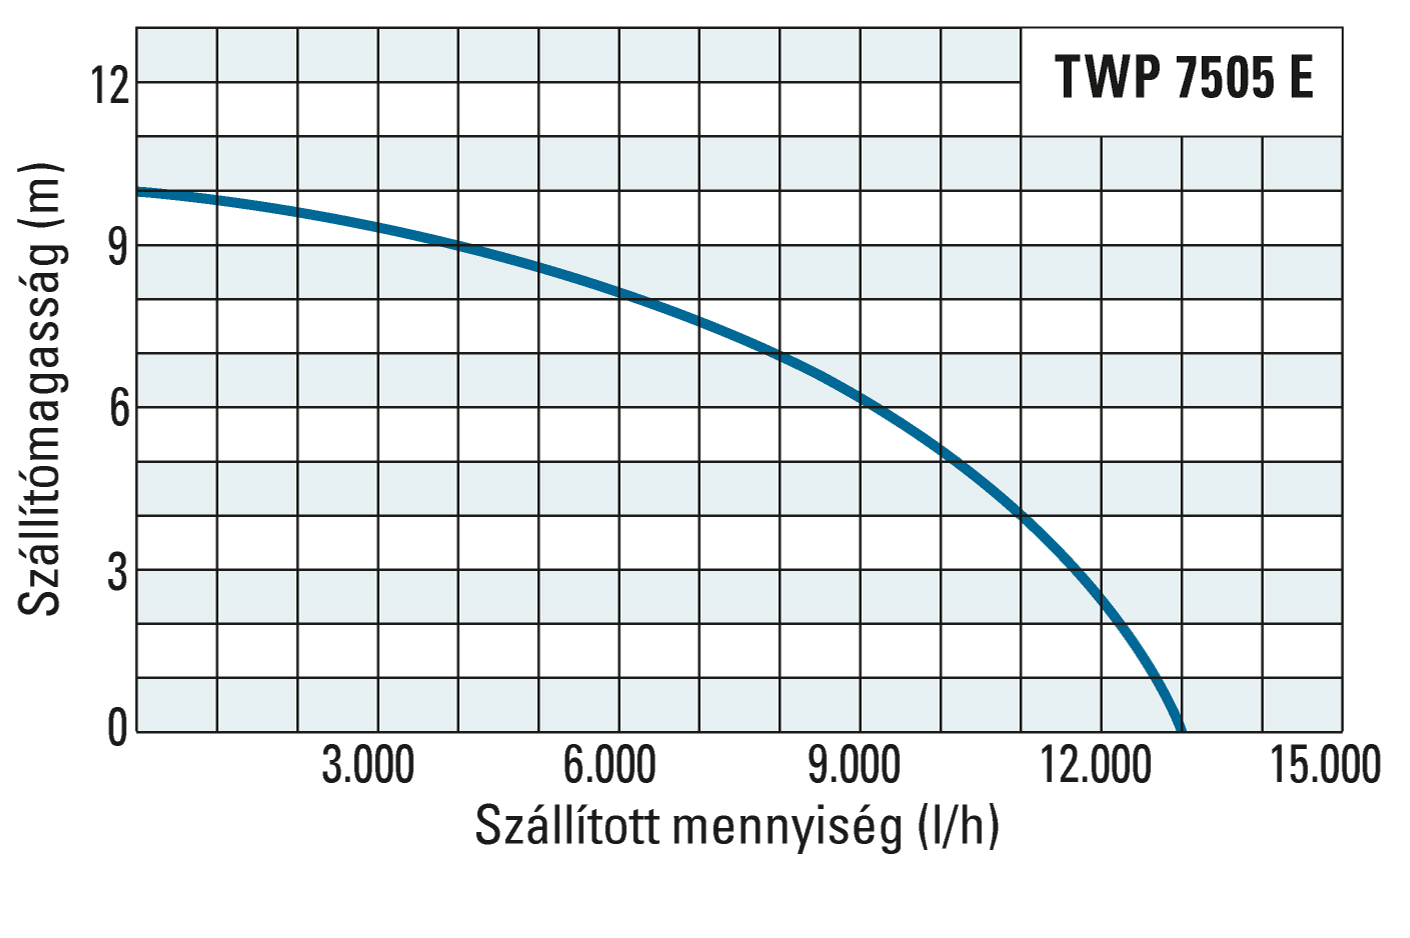 A TWP 7505 E szállítómagassága és szállított mennyisége